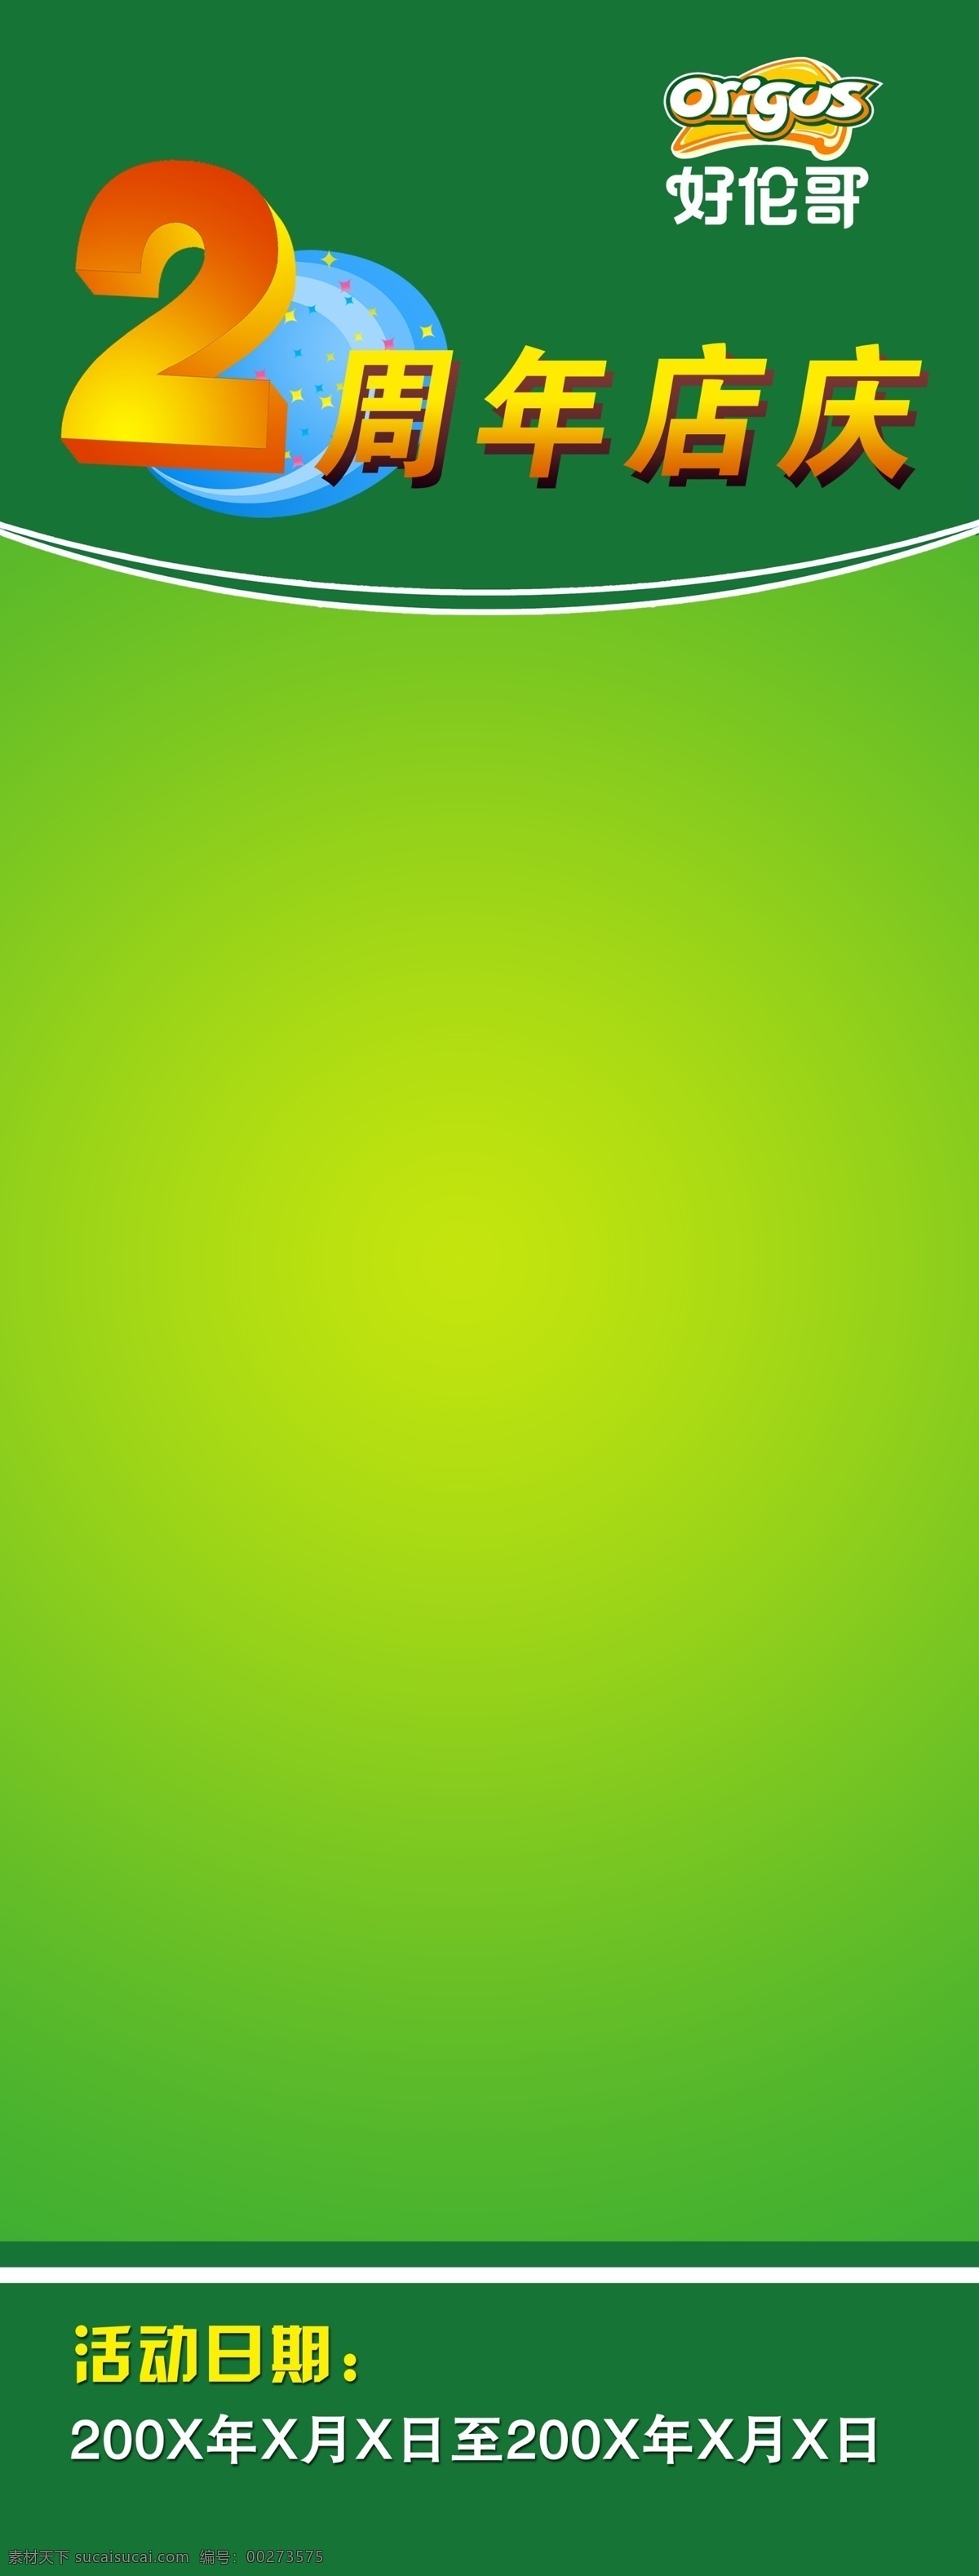 周年 店 庆 x 展架 x展架 好伦哥 饭店 餐厅 模板 2周年 店庆 绿色 分层素材 分层 源文件库 广告设计模板 展板模板